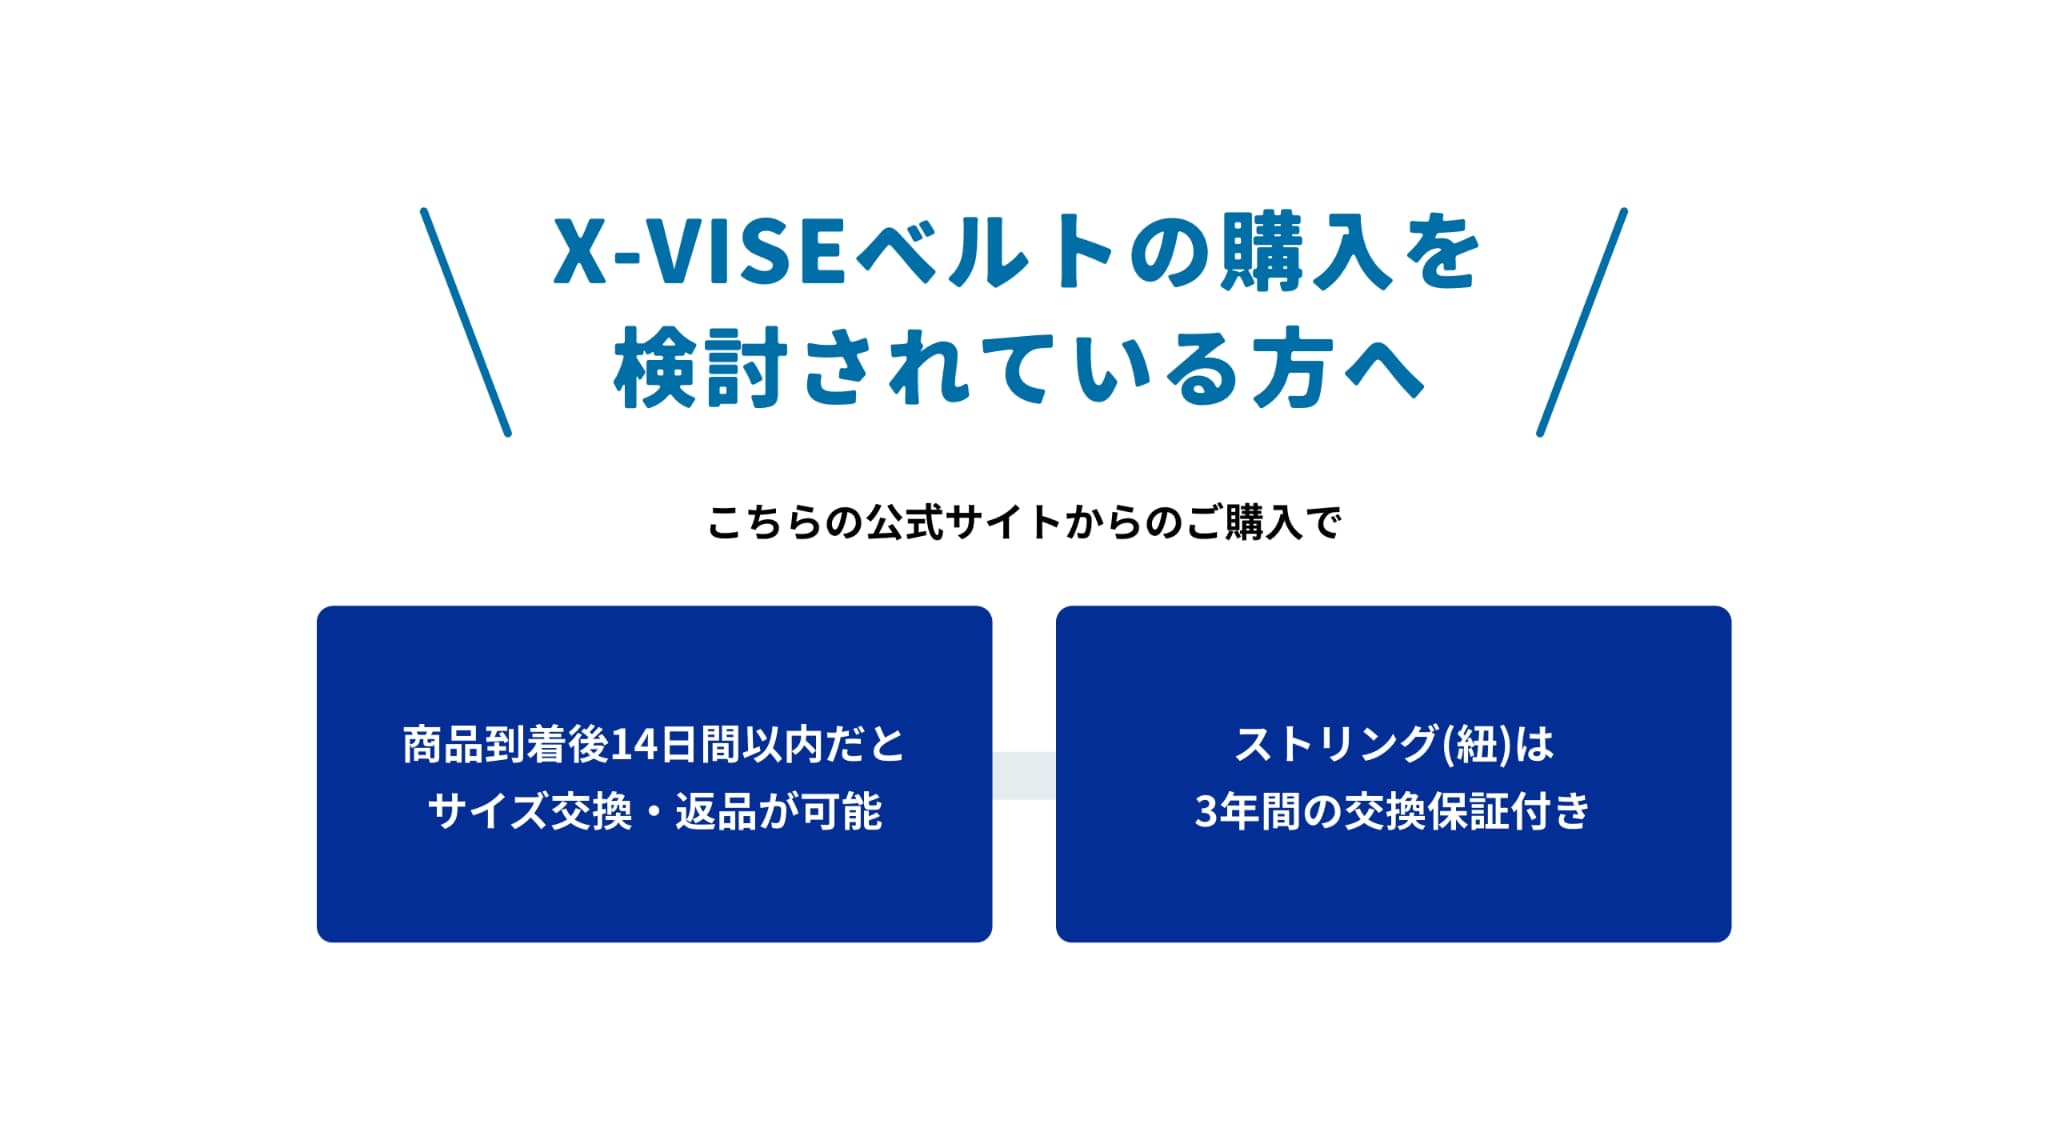 X-VISE ベルトの購入を検討されている方へ